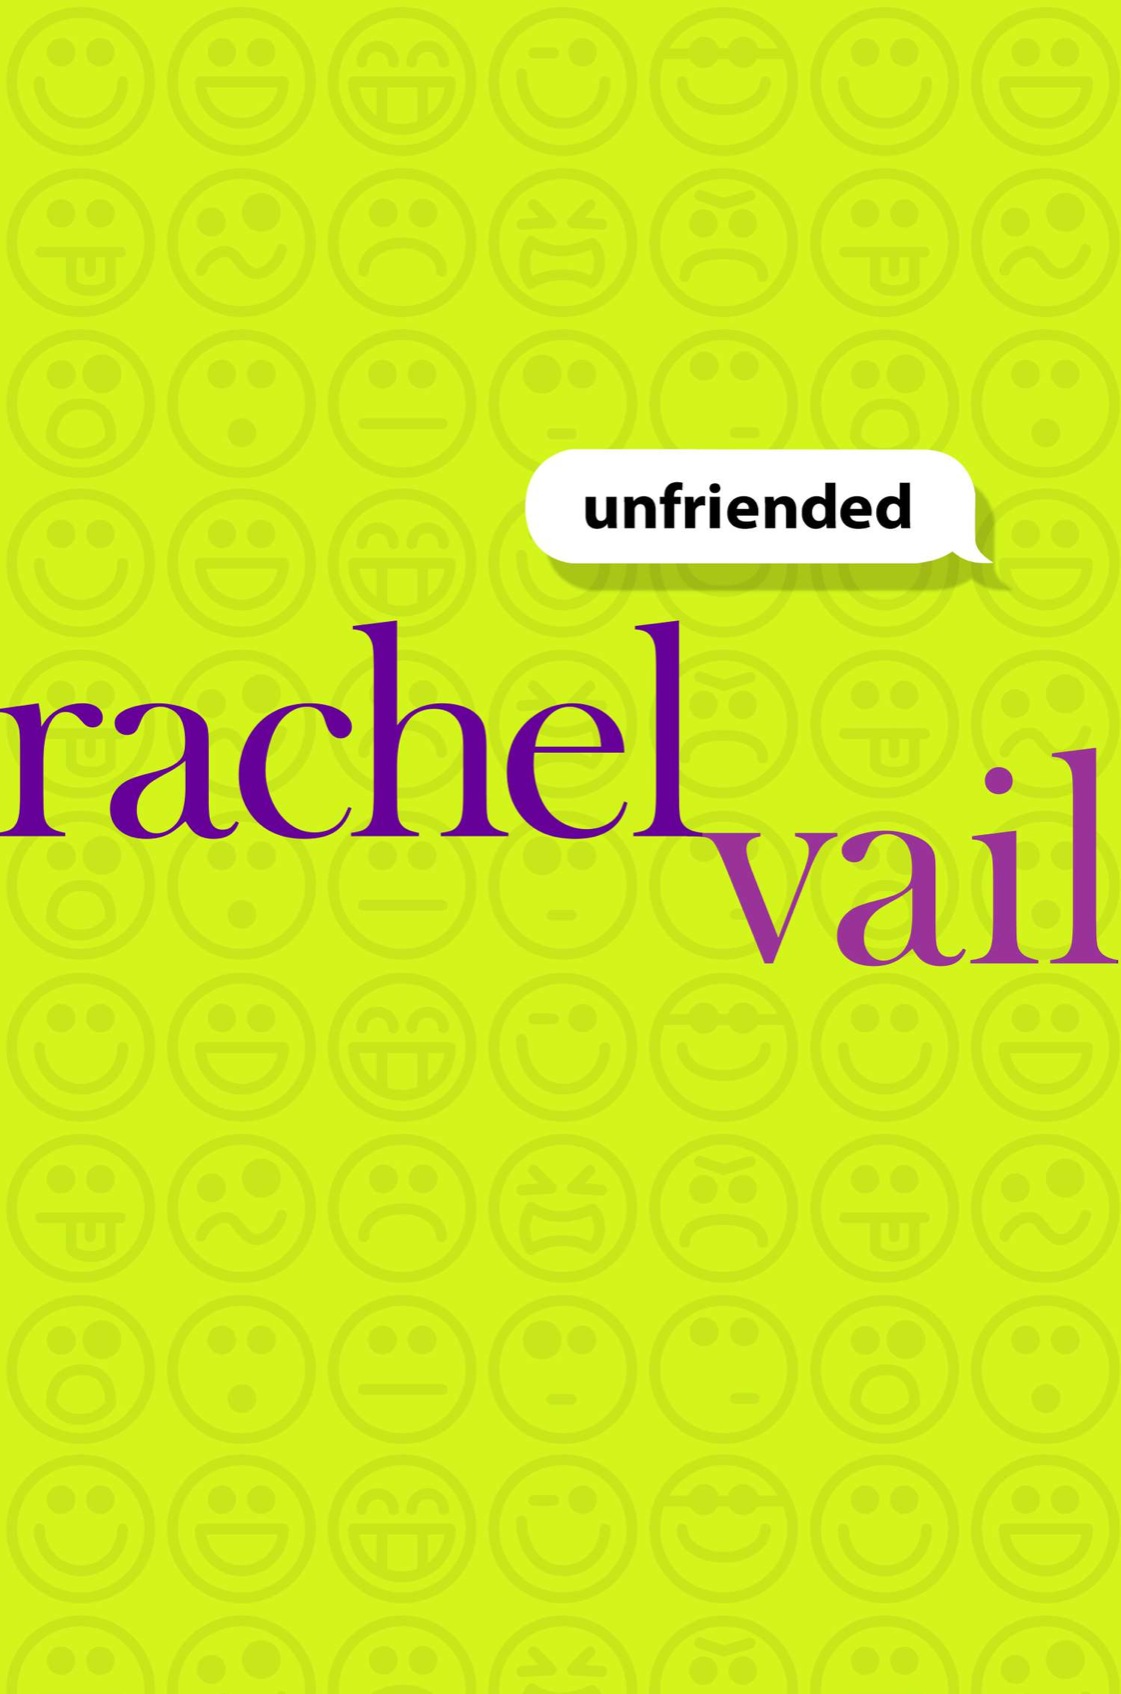 Unfriended (2014) by Rachel Vail